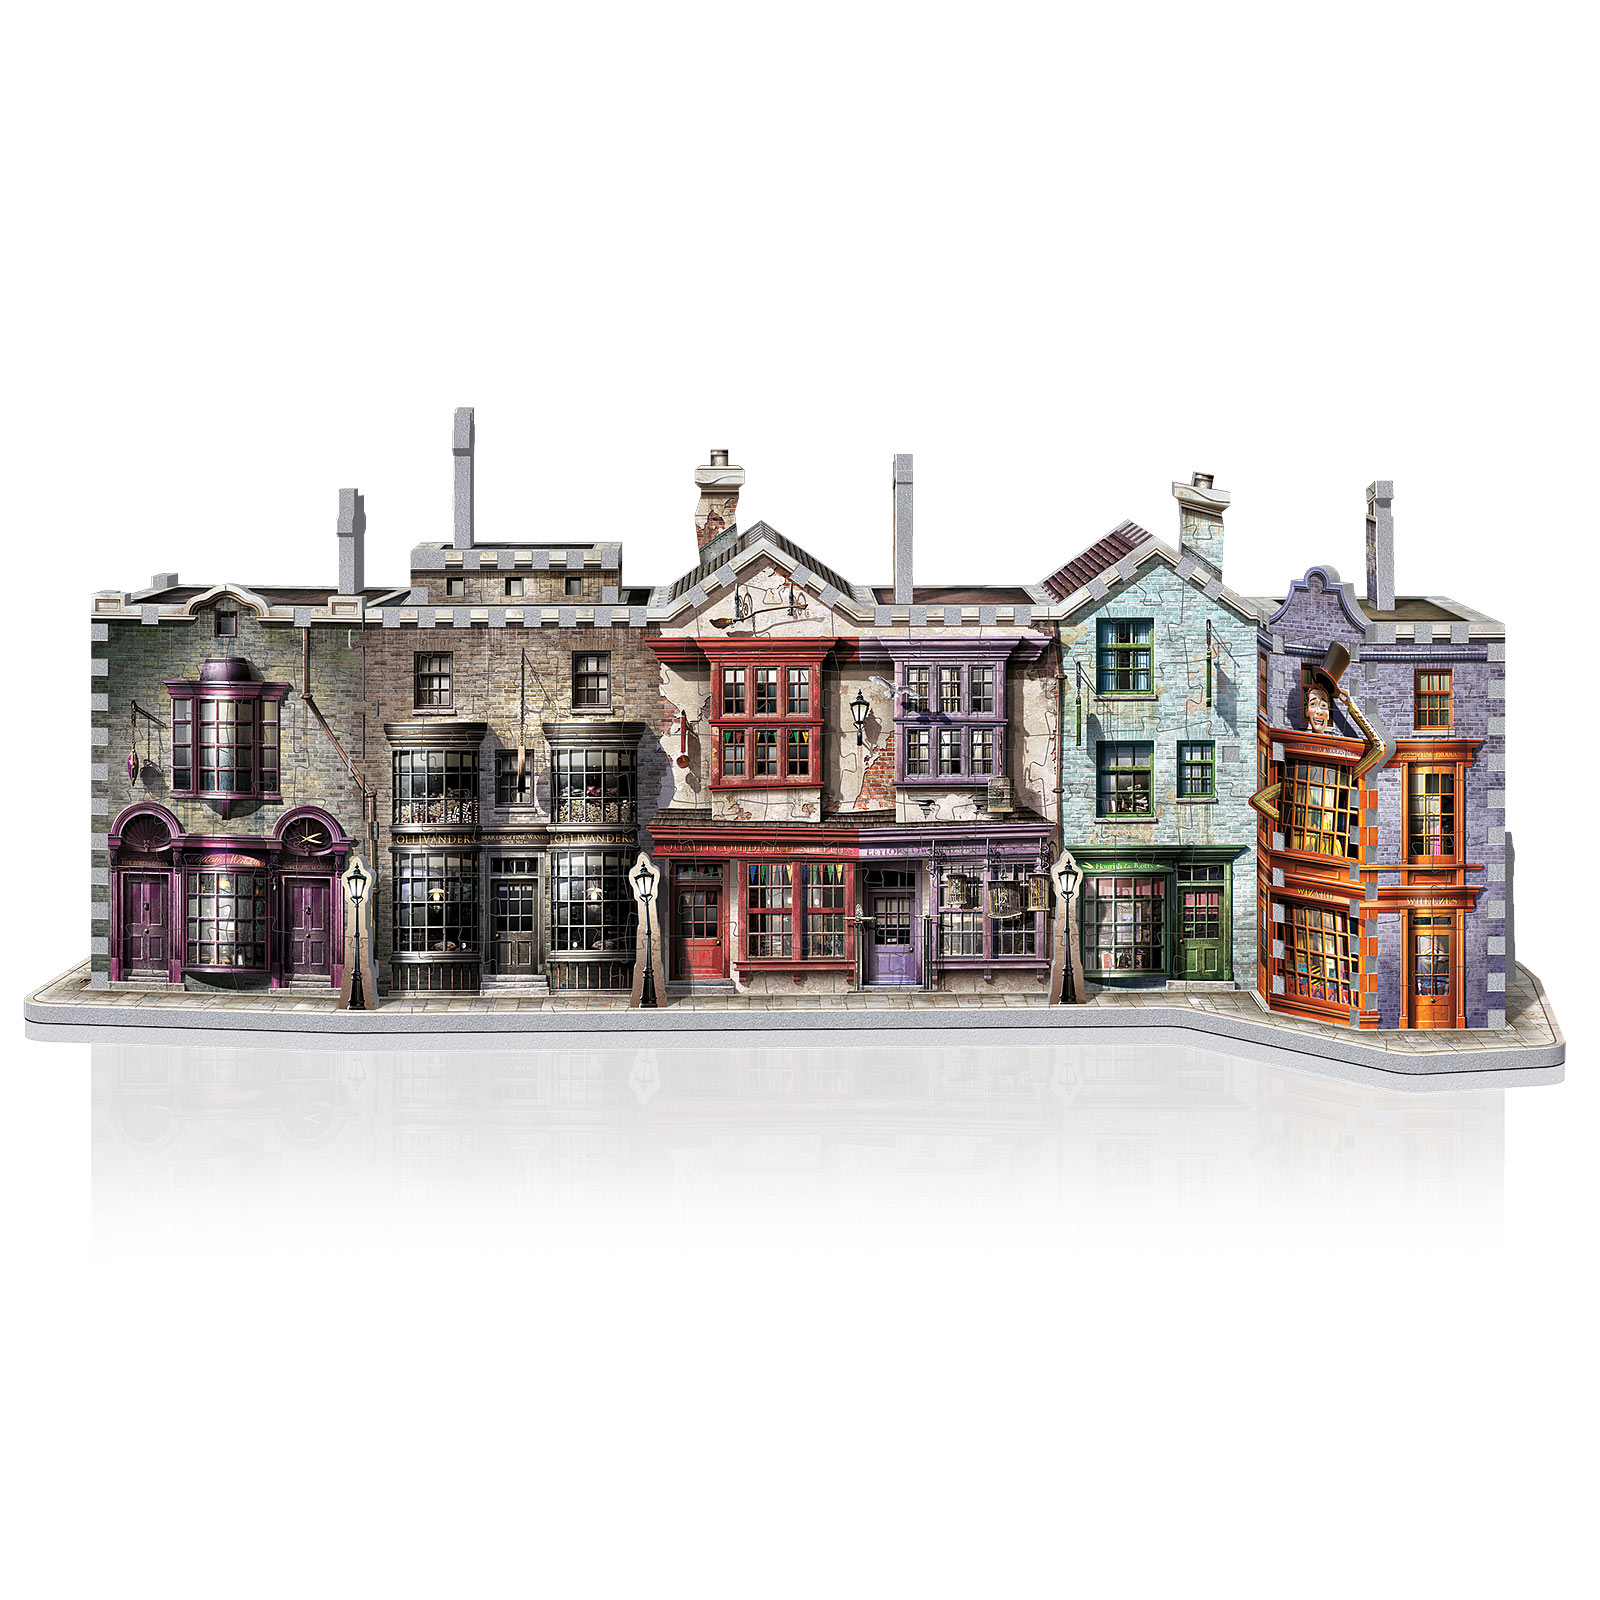 Harry Potter - Diagon Alley 3D Puzzle